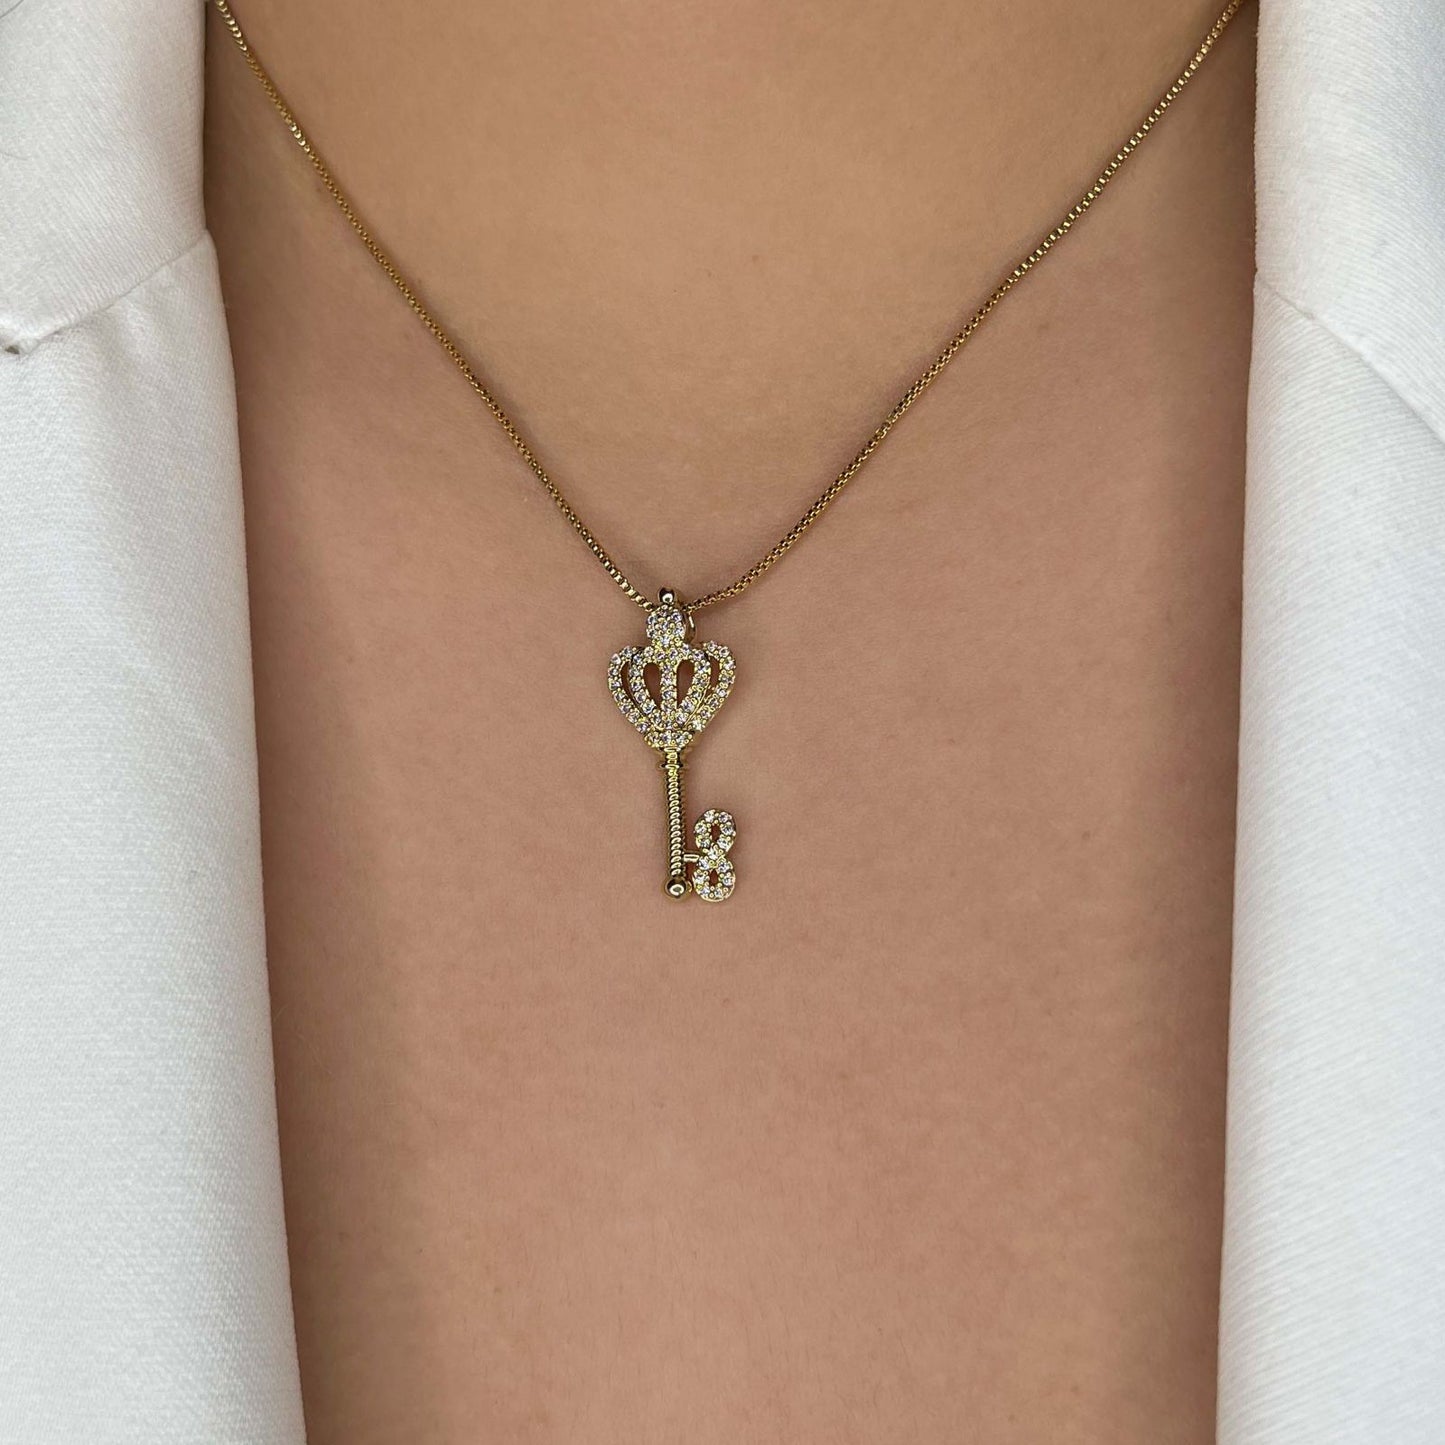 Royal Key Necklace (997)